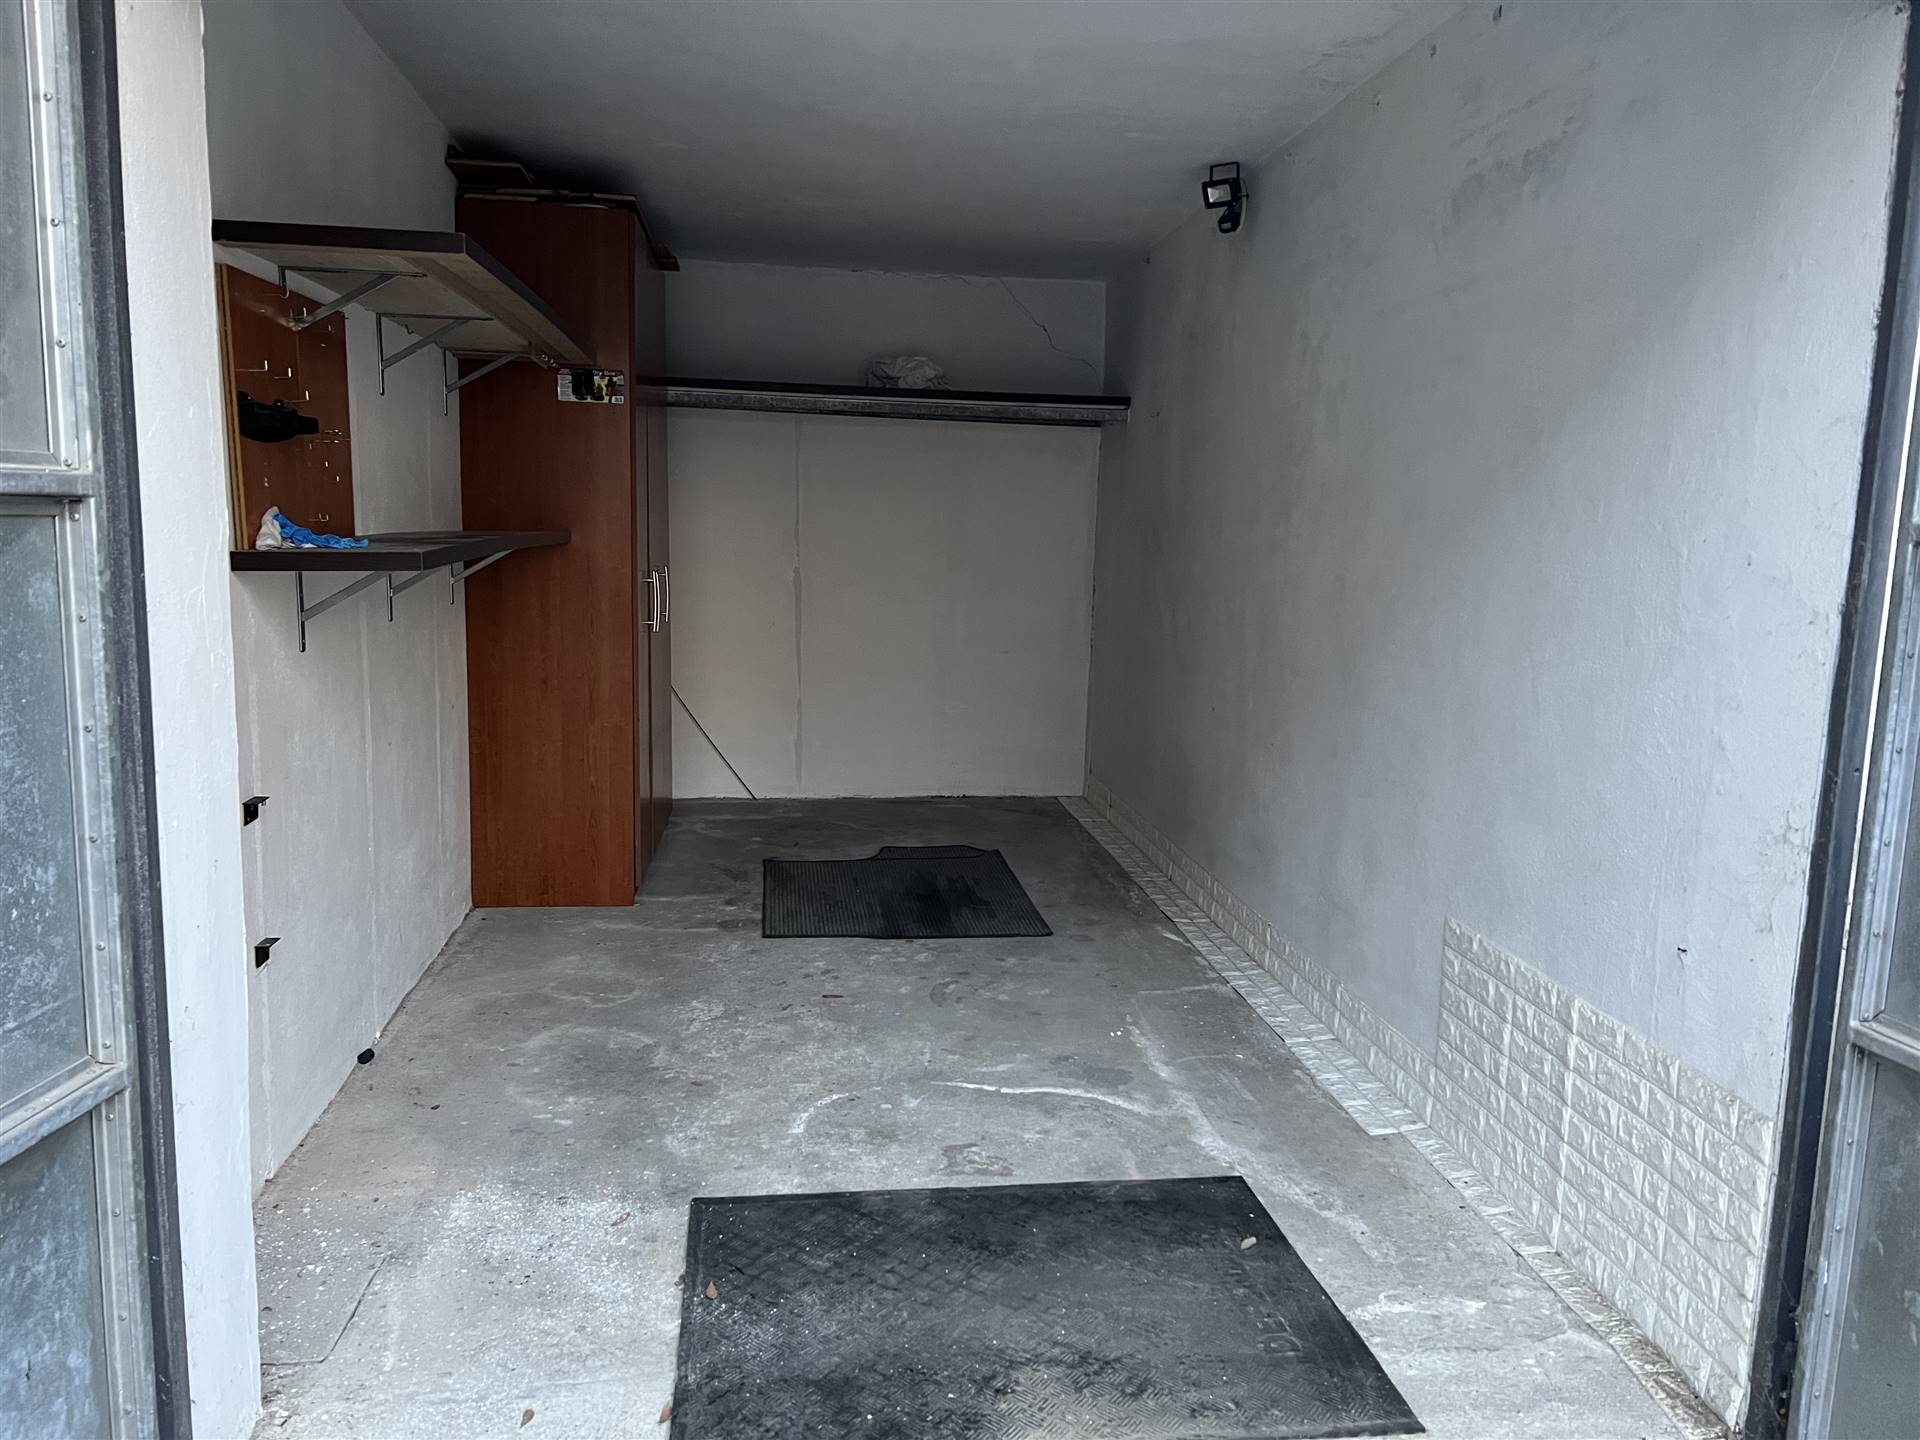 Rif. B433 SOTTOMARINA - Affittasi in zona centralissima (viale Milano) garage di 14 mq. a livello strada con ingresso indipendente e senza spese 